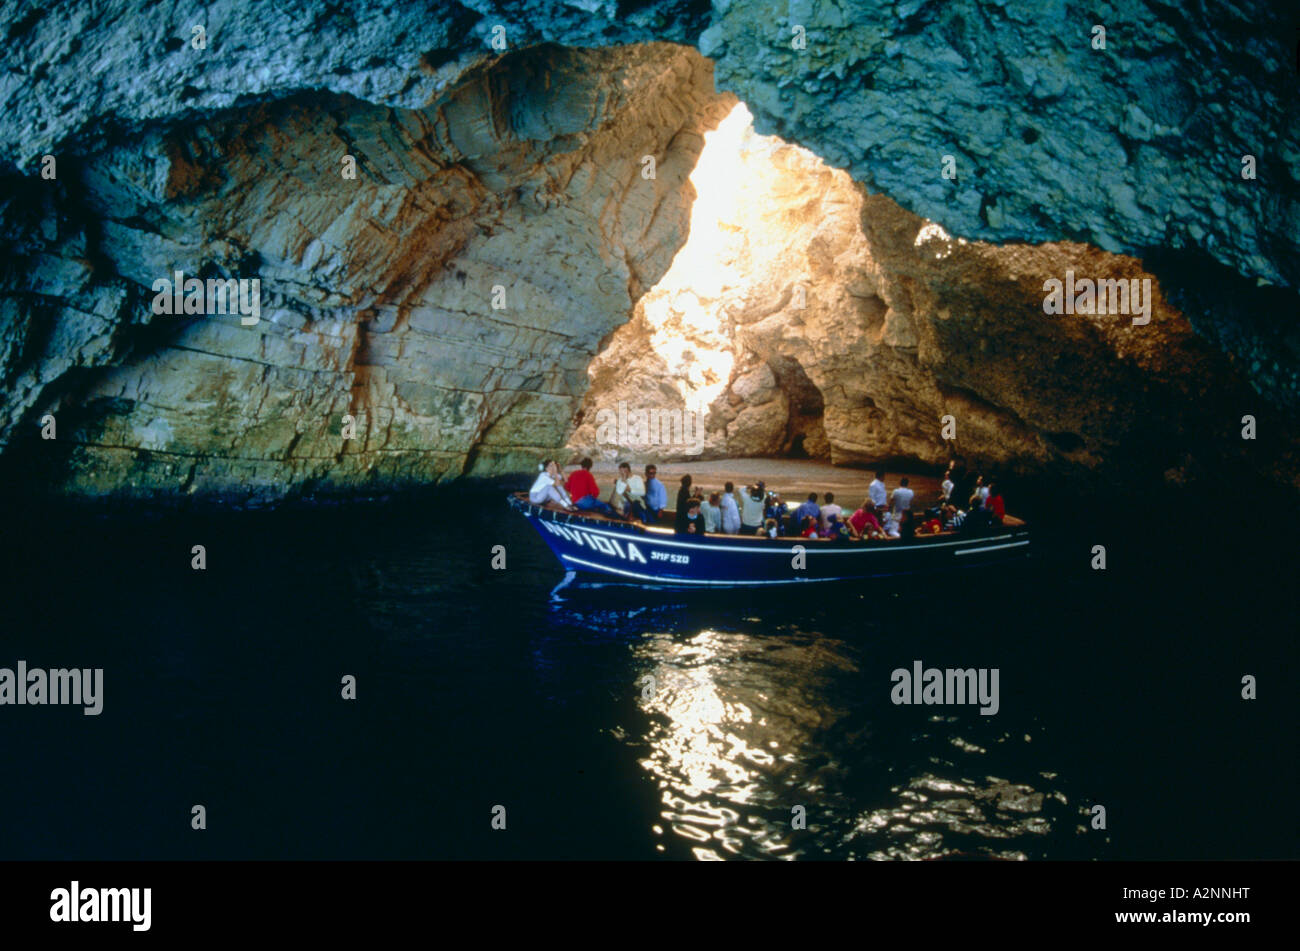 Menschen auf Boot in Grotte Vieste Gargano Apulien Italien Stockfoto